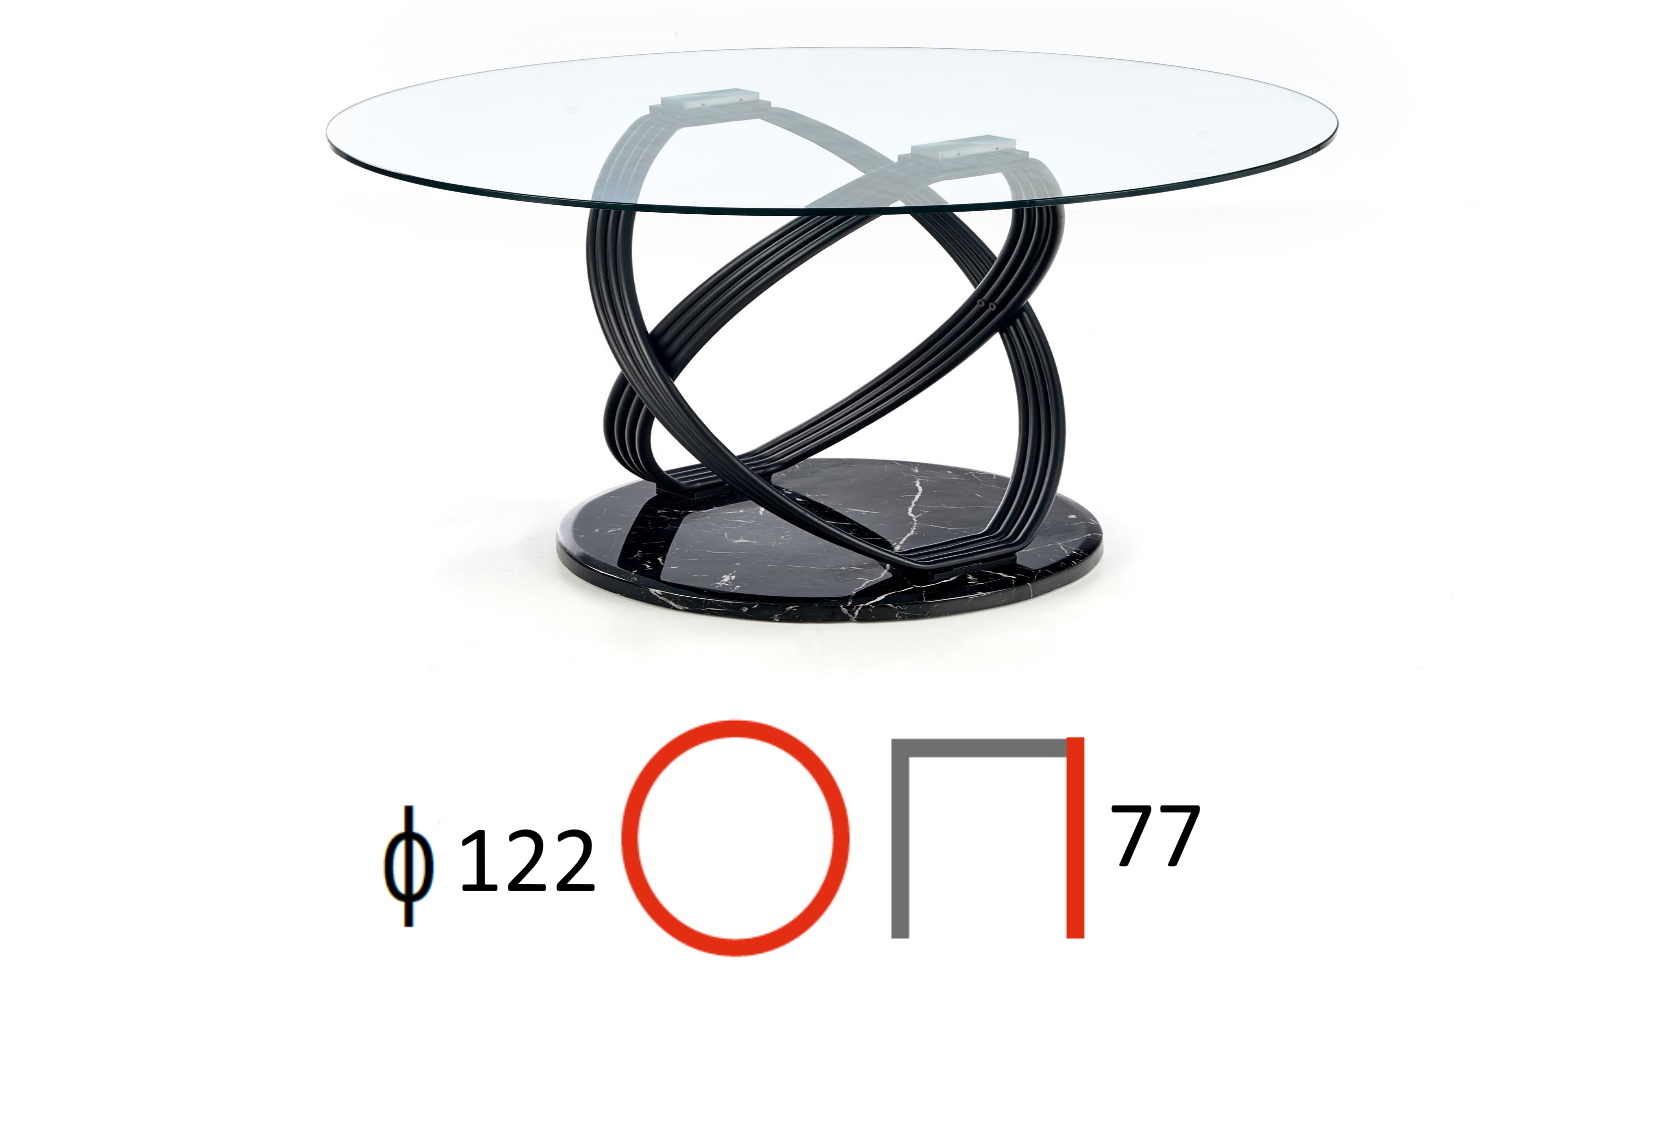 okrągły rozkładany stół 120-160 cm ricardo, wymiary